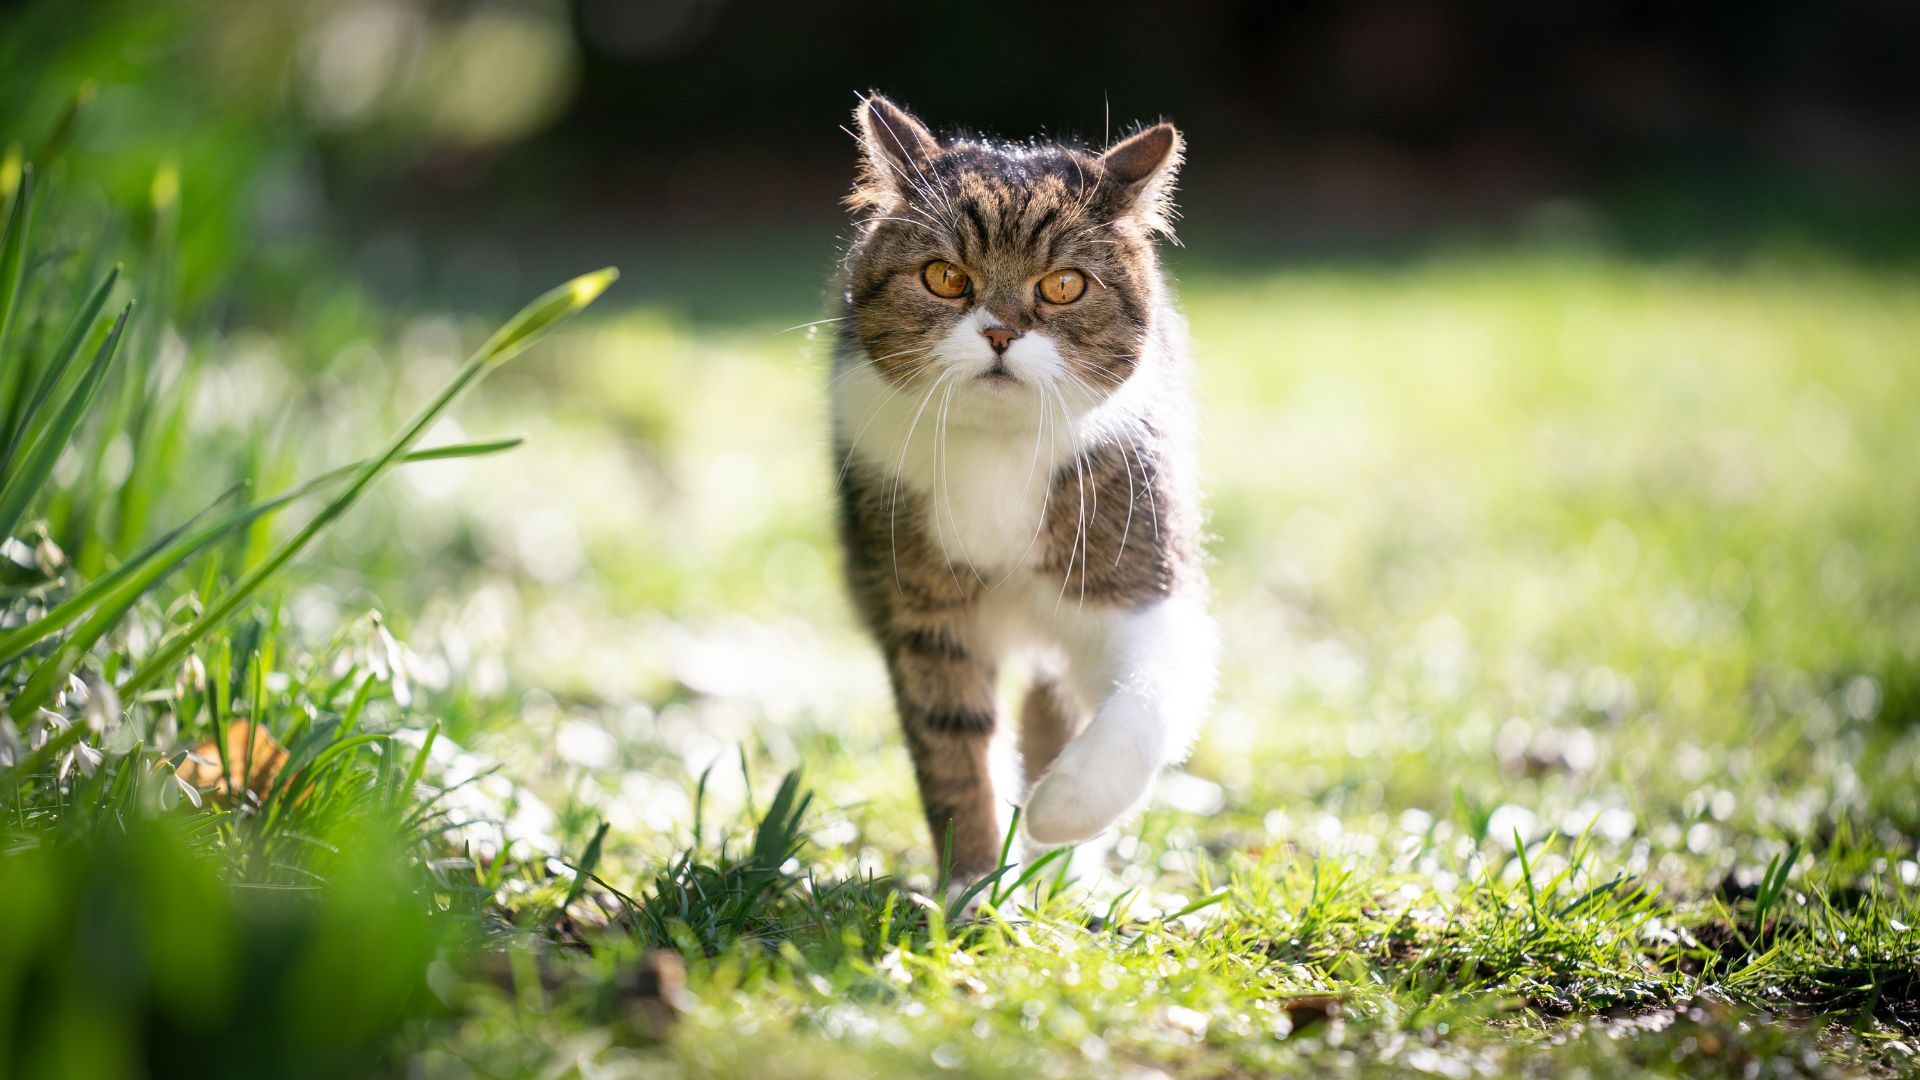 a cat walking on grass